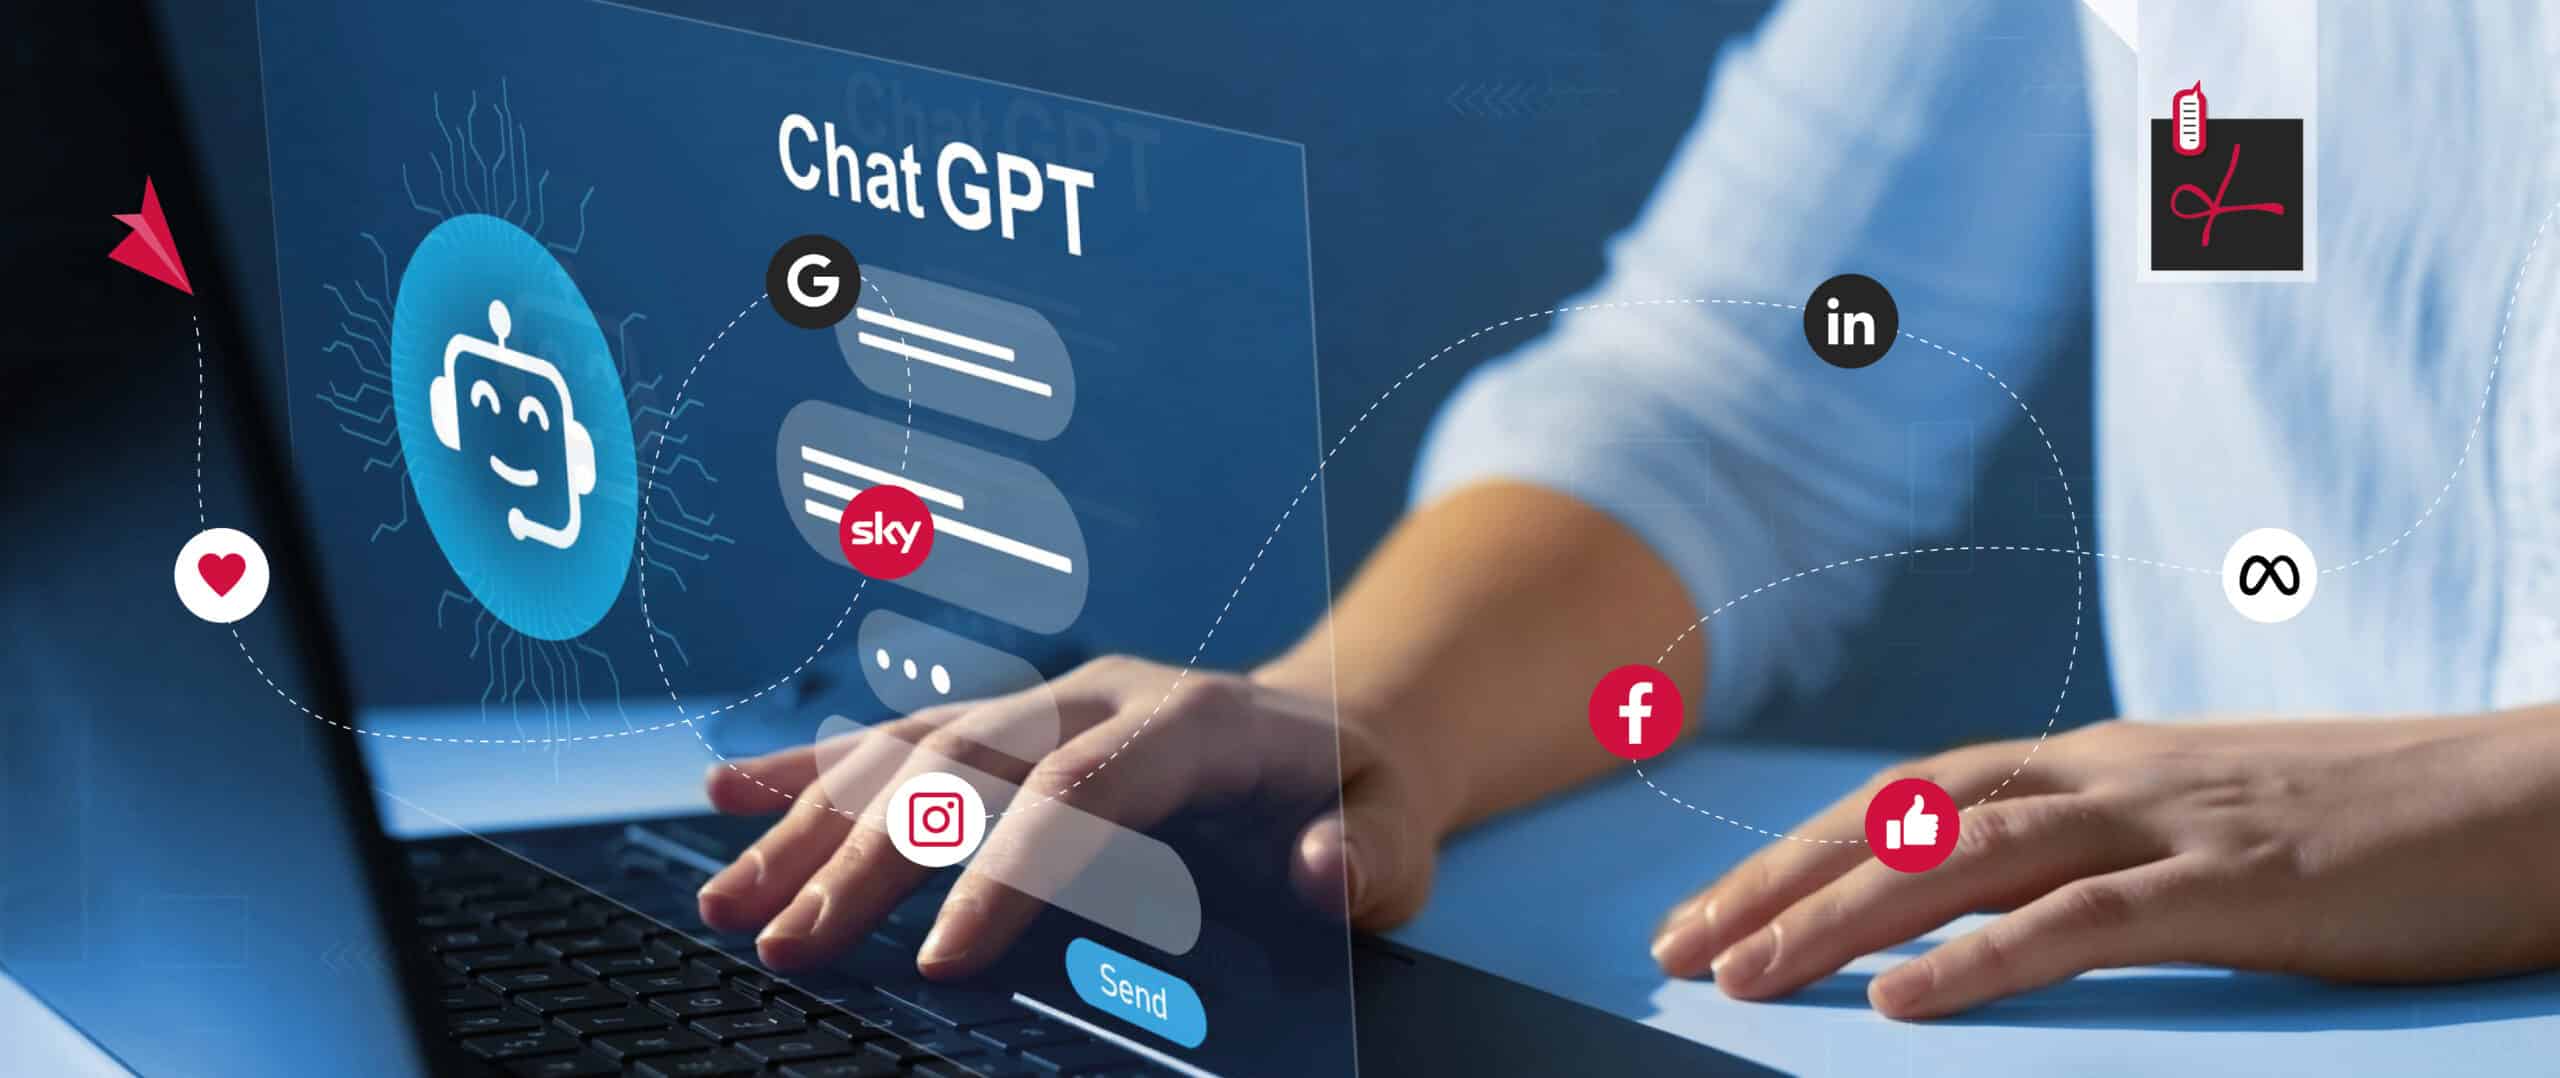 Come usare ChatGPT in comunicazione: la nostra opinione